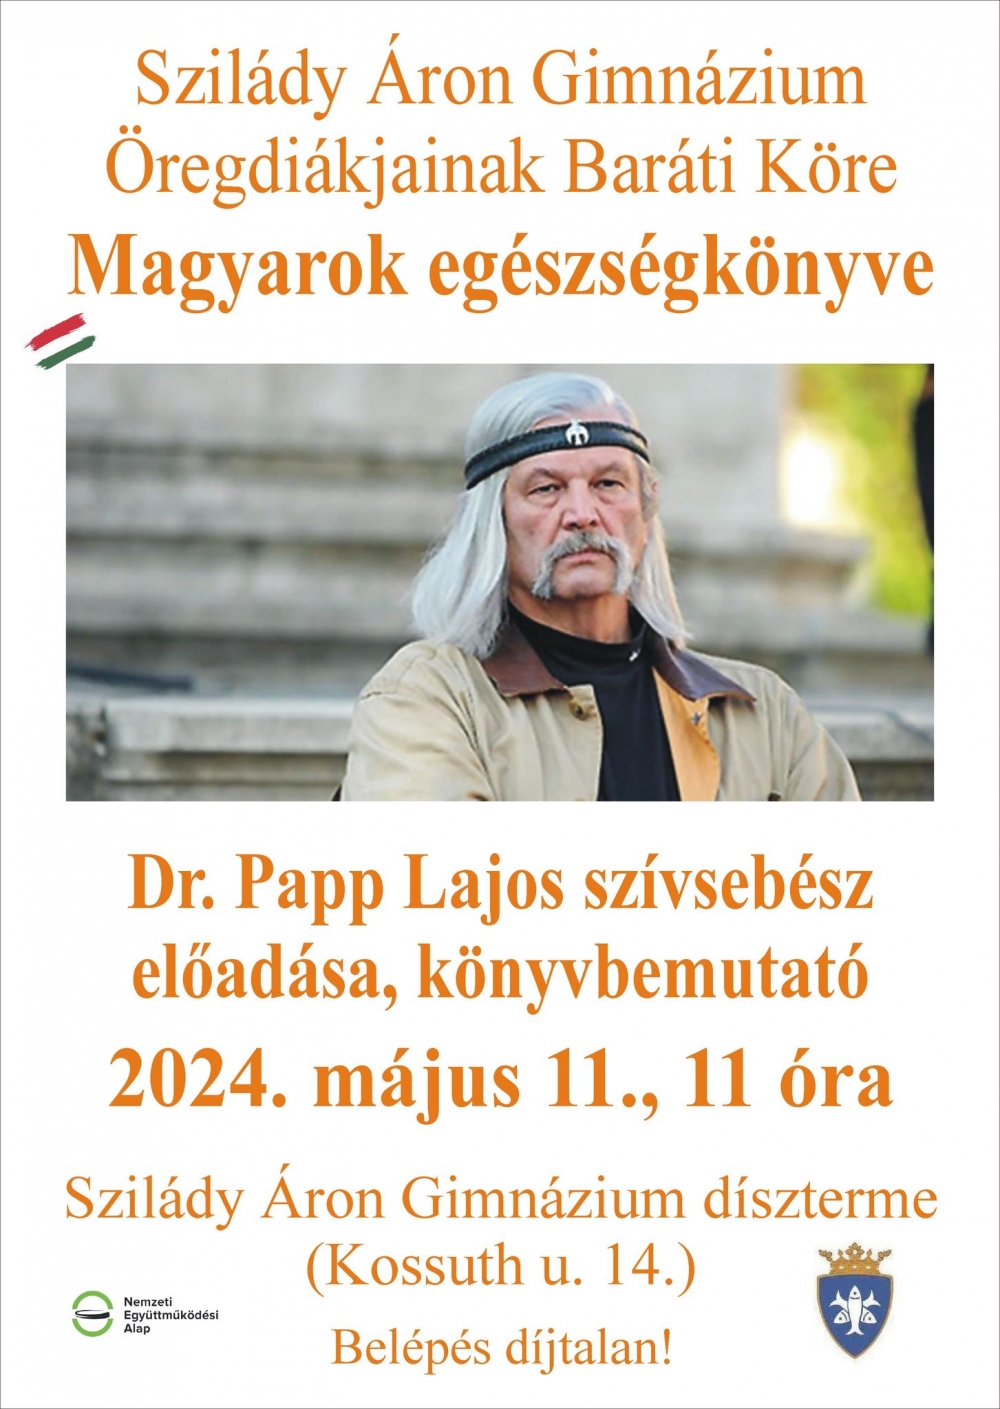 Magyarok egészségkönyve - Papp Lajos professzor előadása, könyvbemutatója